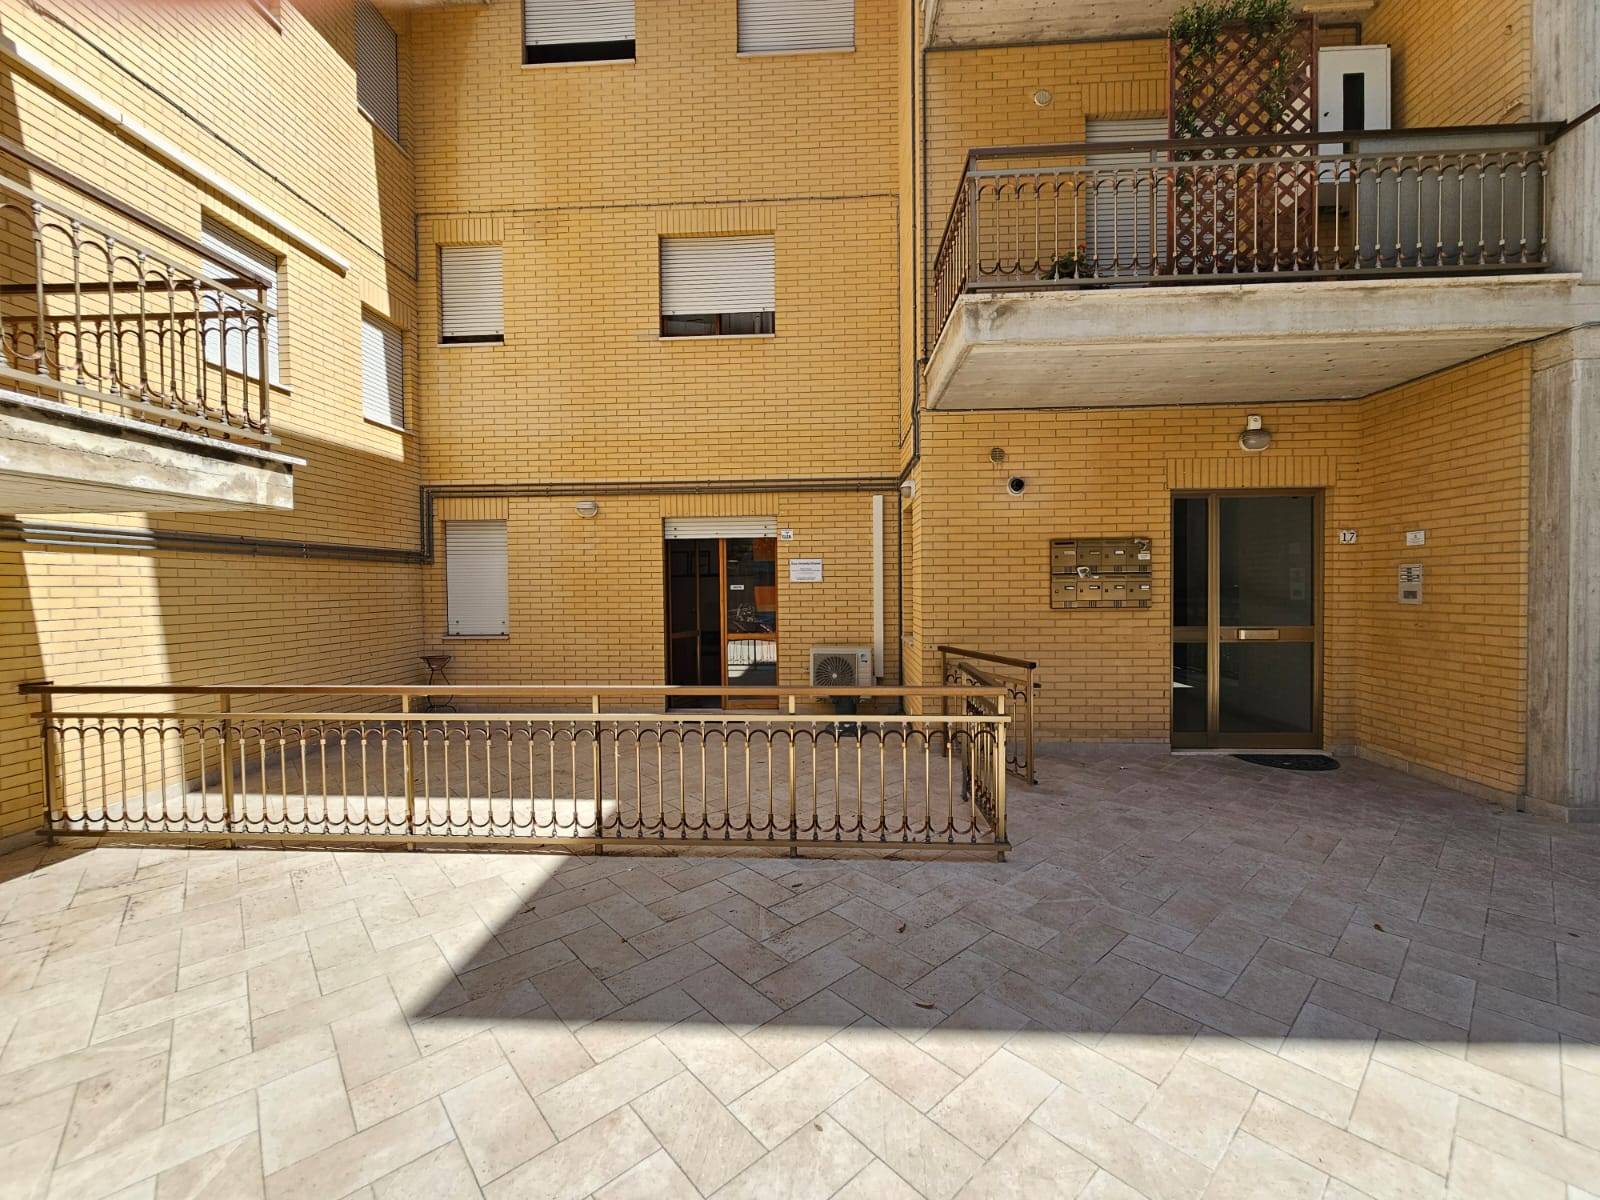 Appartamento in vendita a Fermo, 3 locali, prezzo € 110.000 | PortaleAgenzieImmobiliari.it